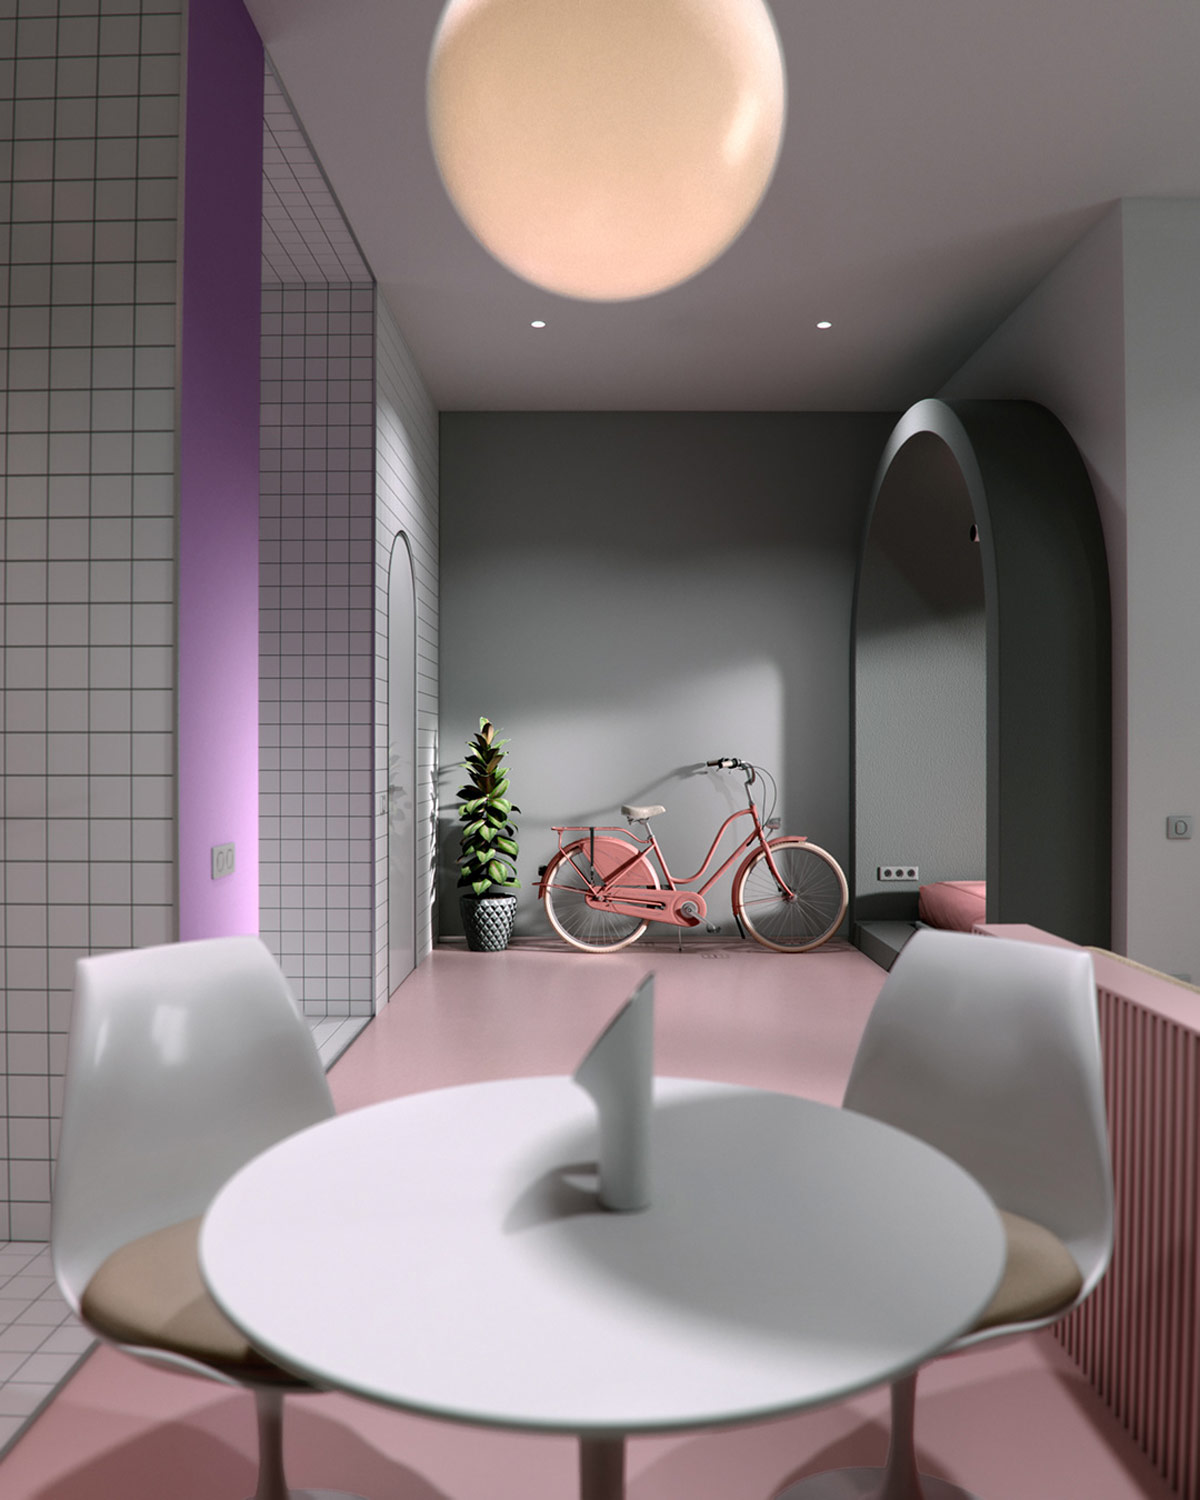 hình ảnh xe đạp màu hồng trong căn hộ 50m2 nhìn từ phòng ăn